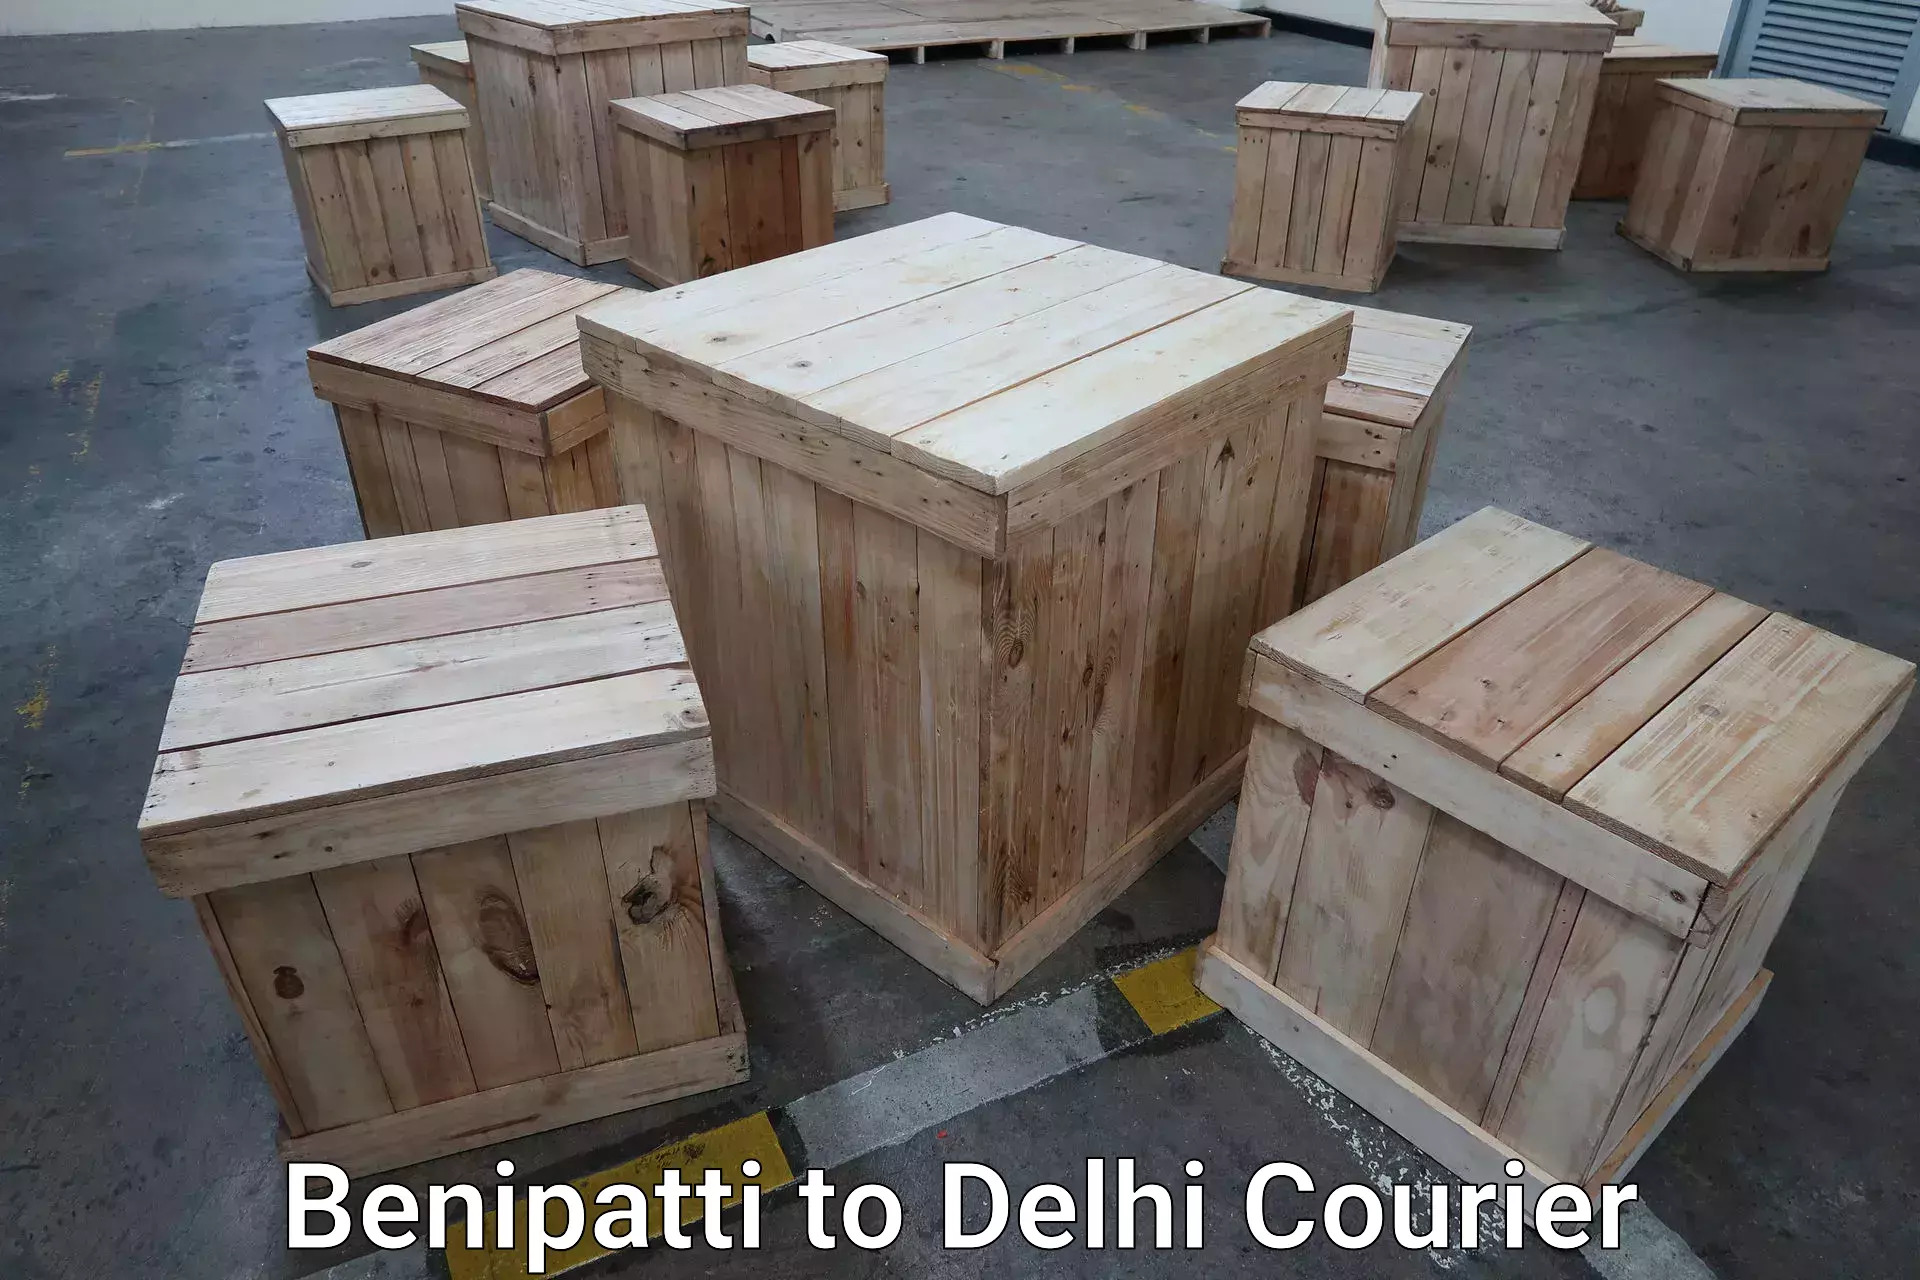 Baggage transport professionals Benipatti to Delhi